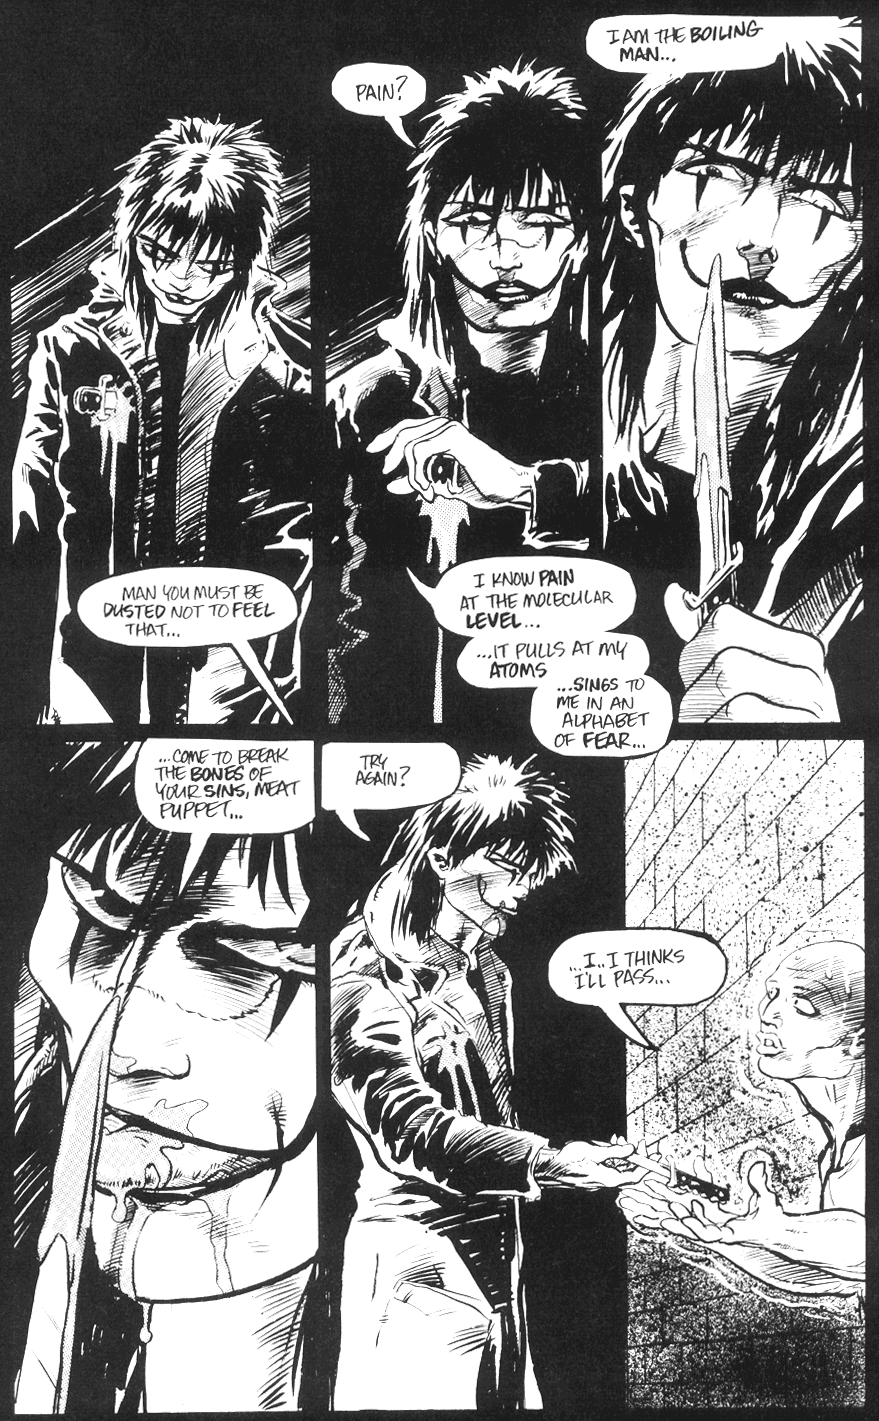 Eric Draven abraça sua loucura em The Crow Vol.  1 #1 "Pain" (1989), Calibre Press.  Palavras e arte de James O'Barr.